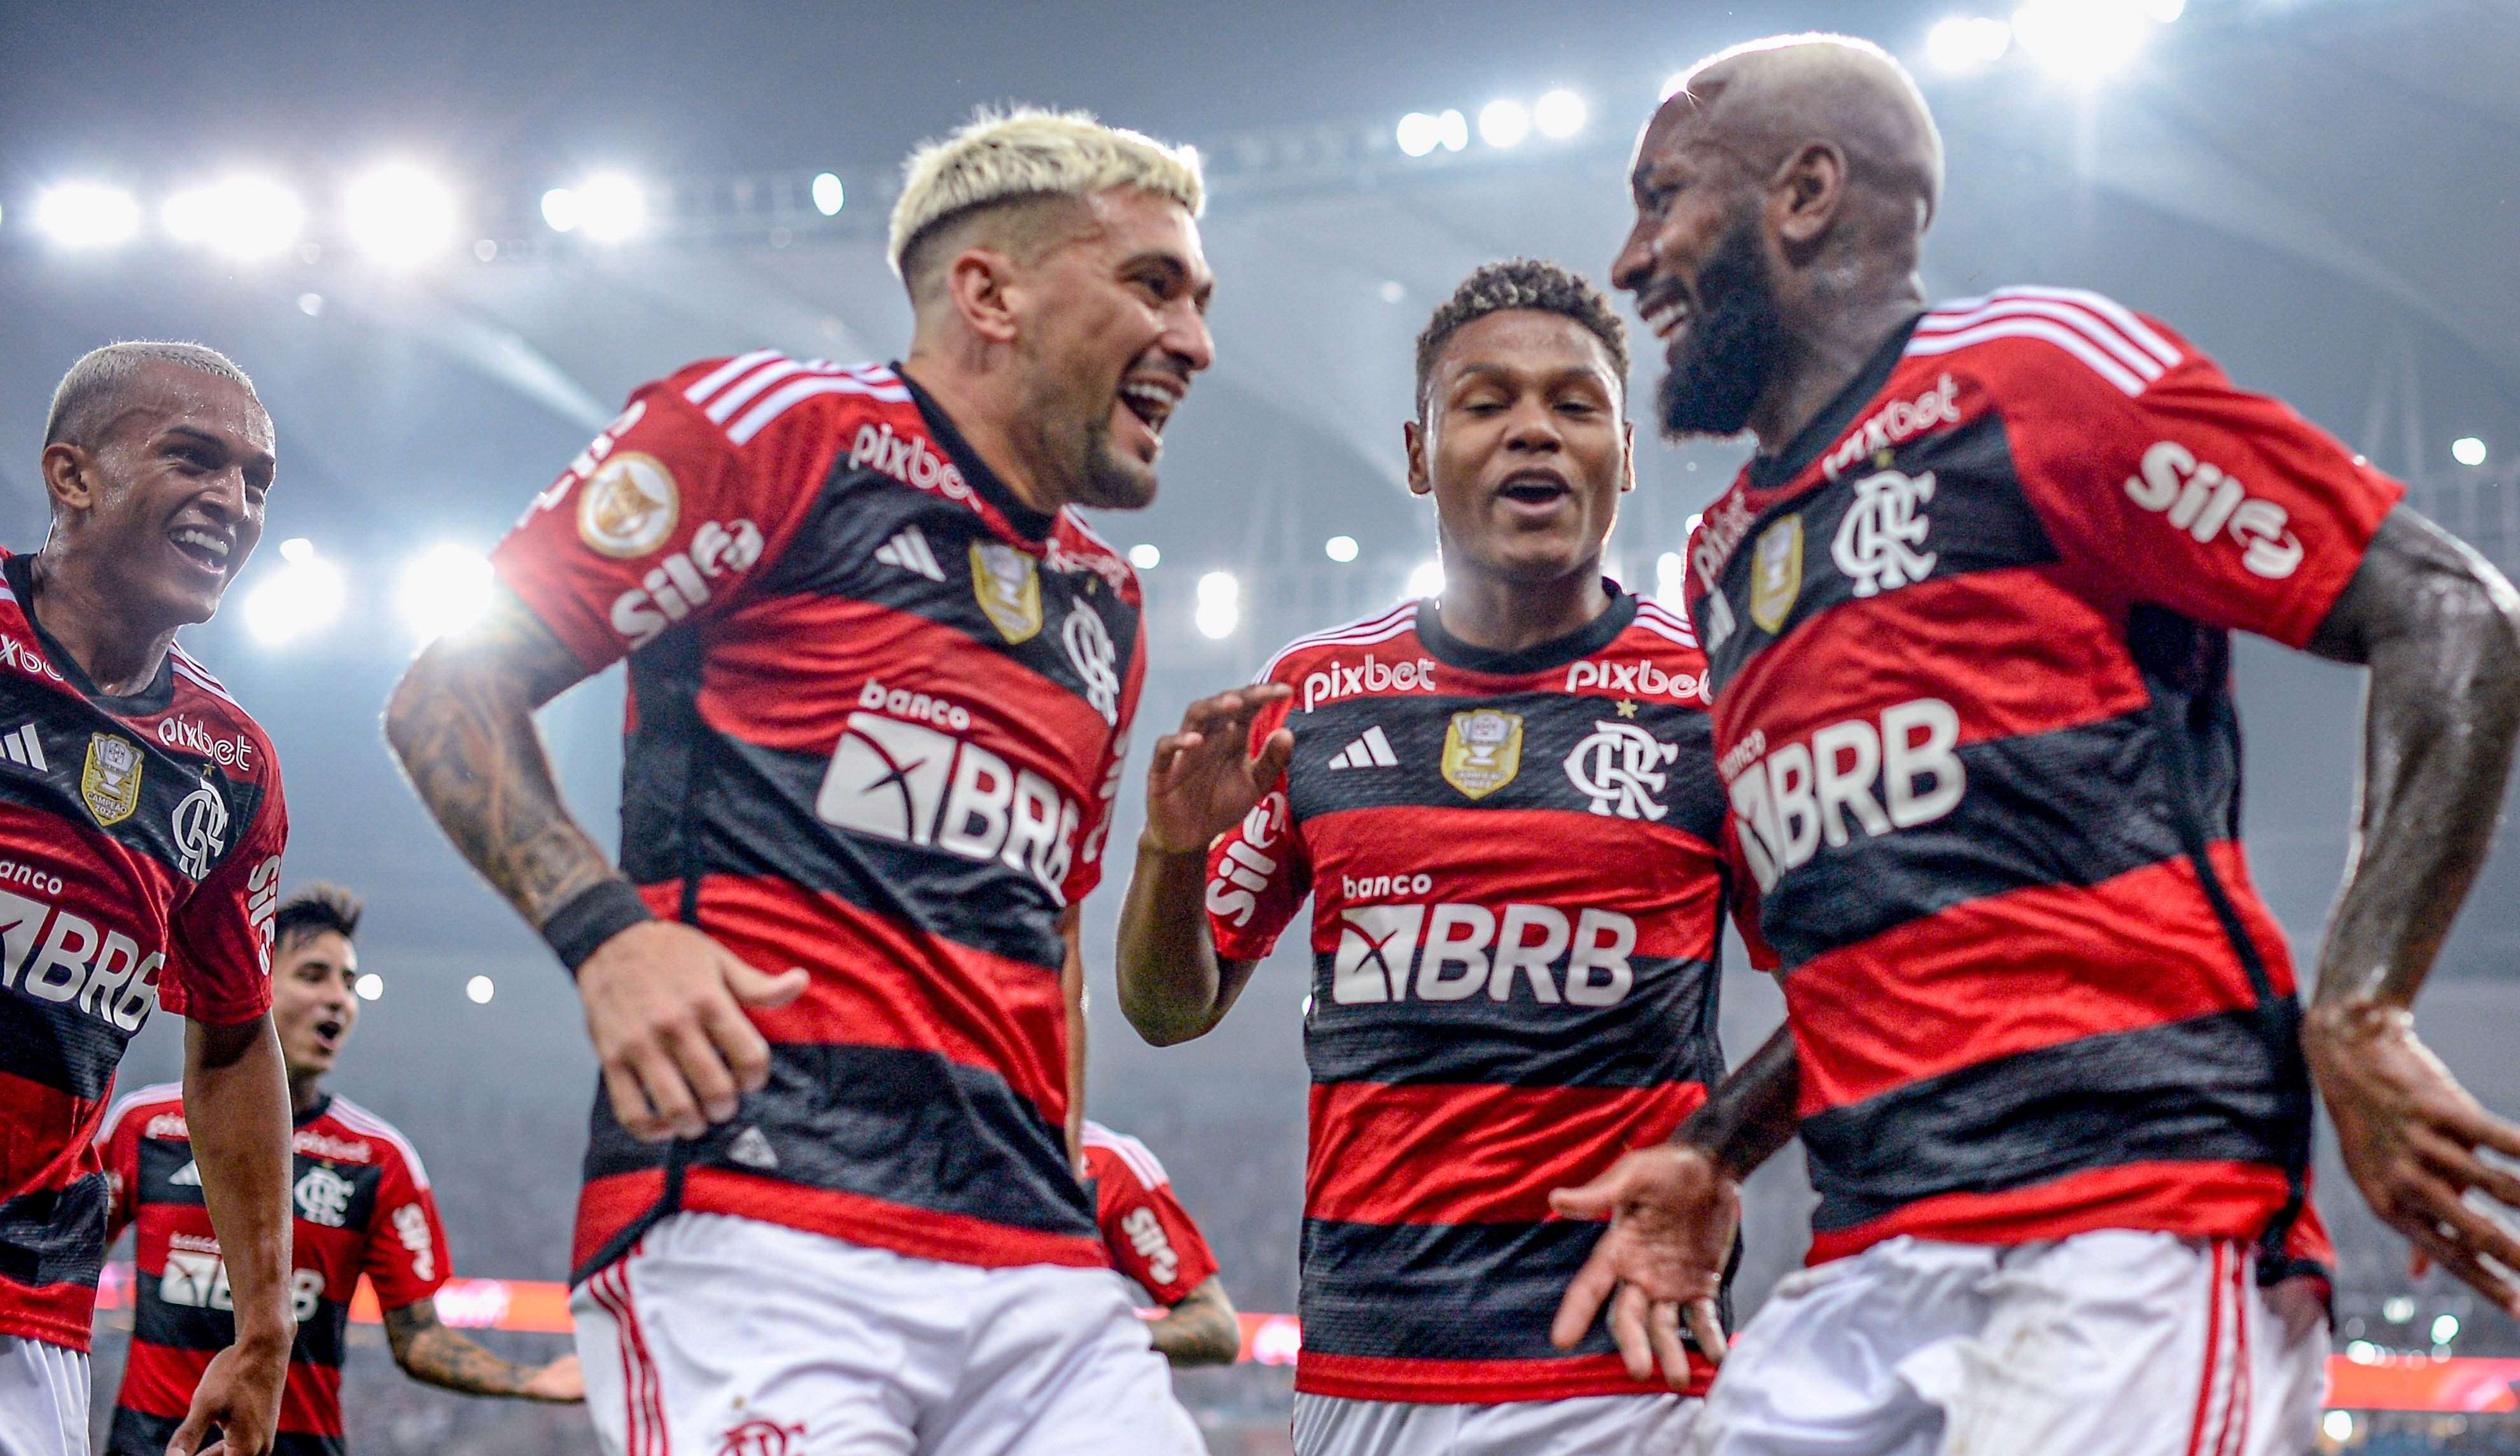 Com primeiro tempo arrasador, Flamengo goleia e aumenta crise no Vasco